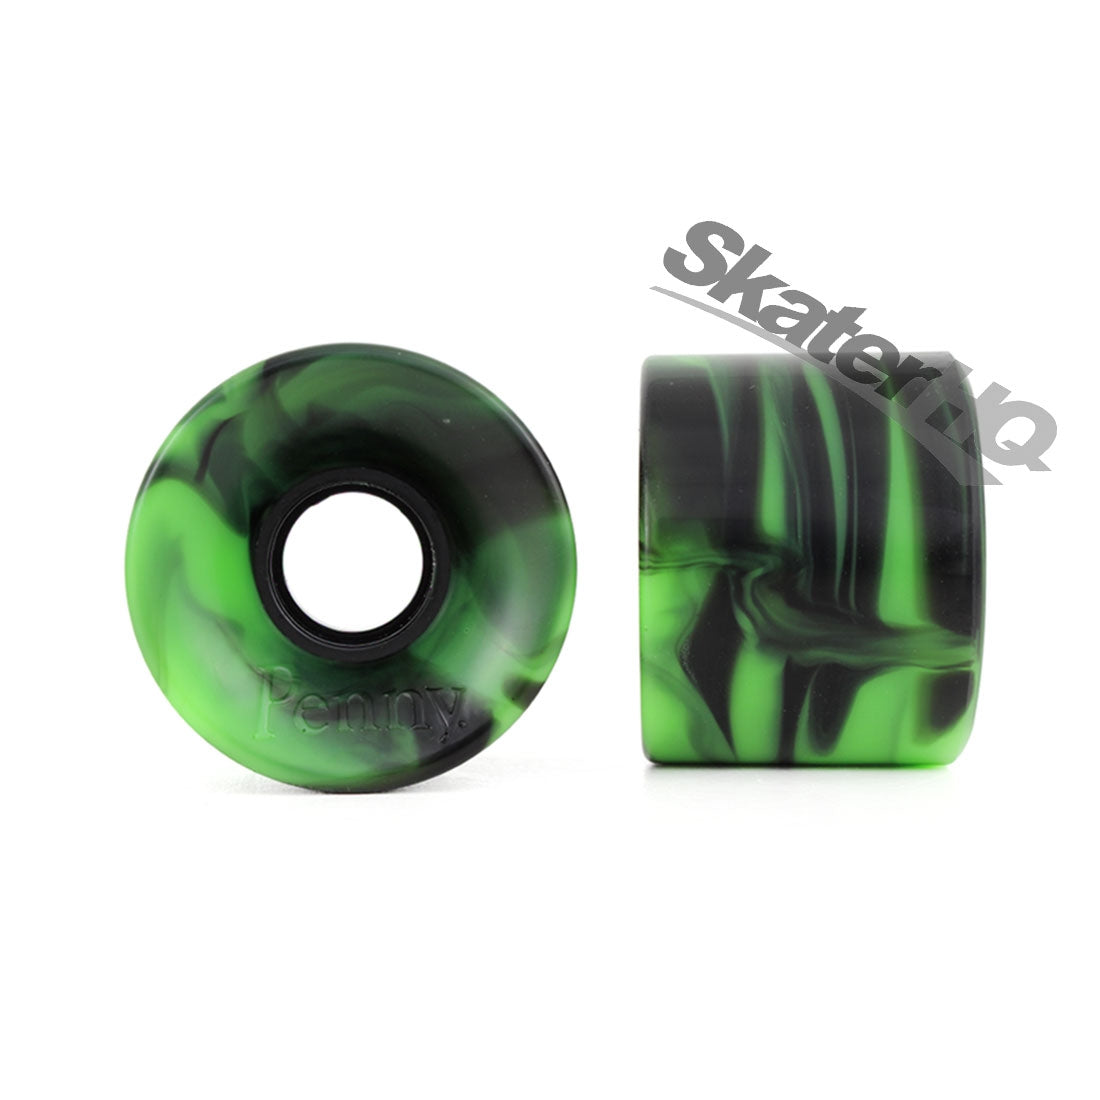 Penny 59mm/83a Wheels - Green/Black Swirl Skateboard Wheels